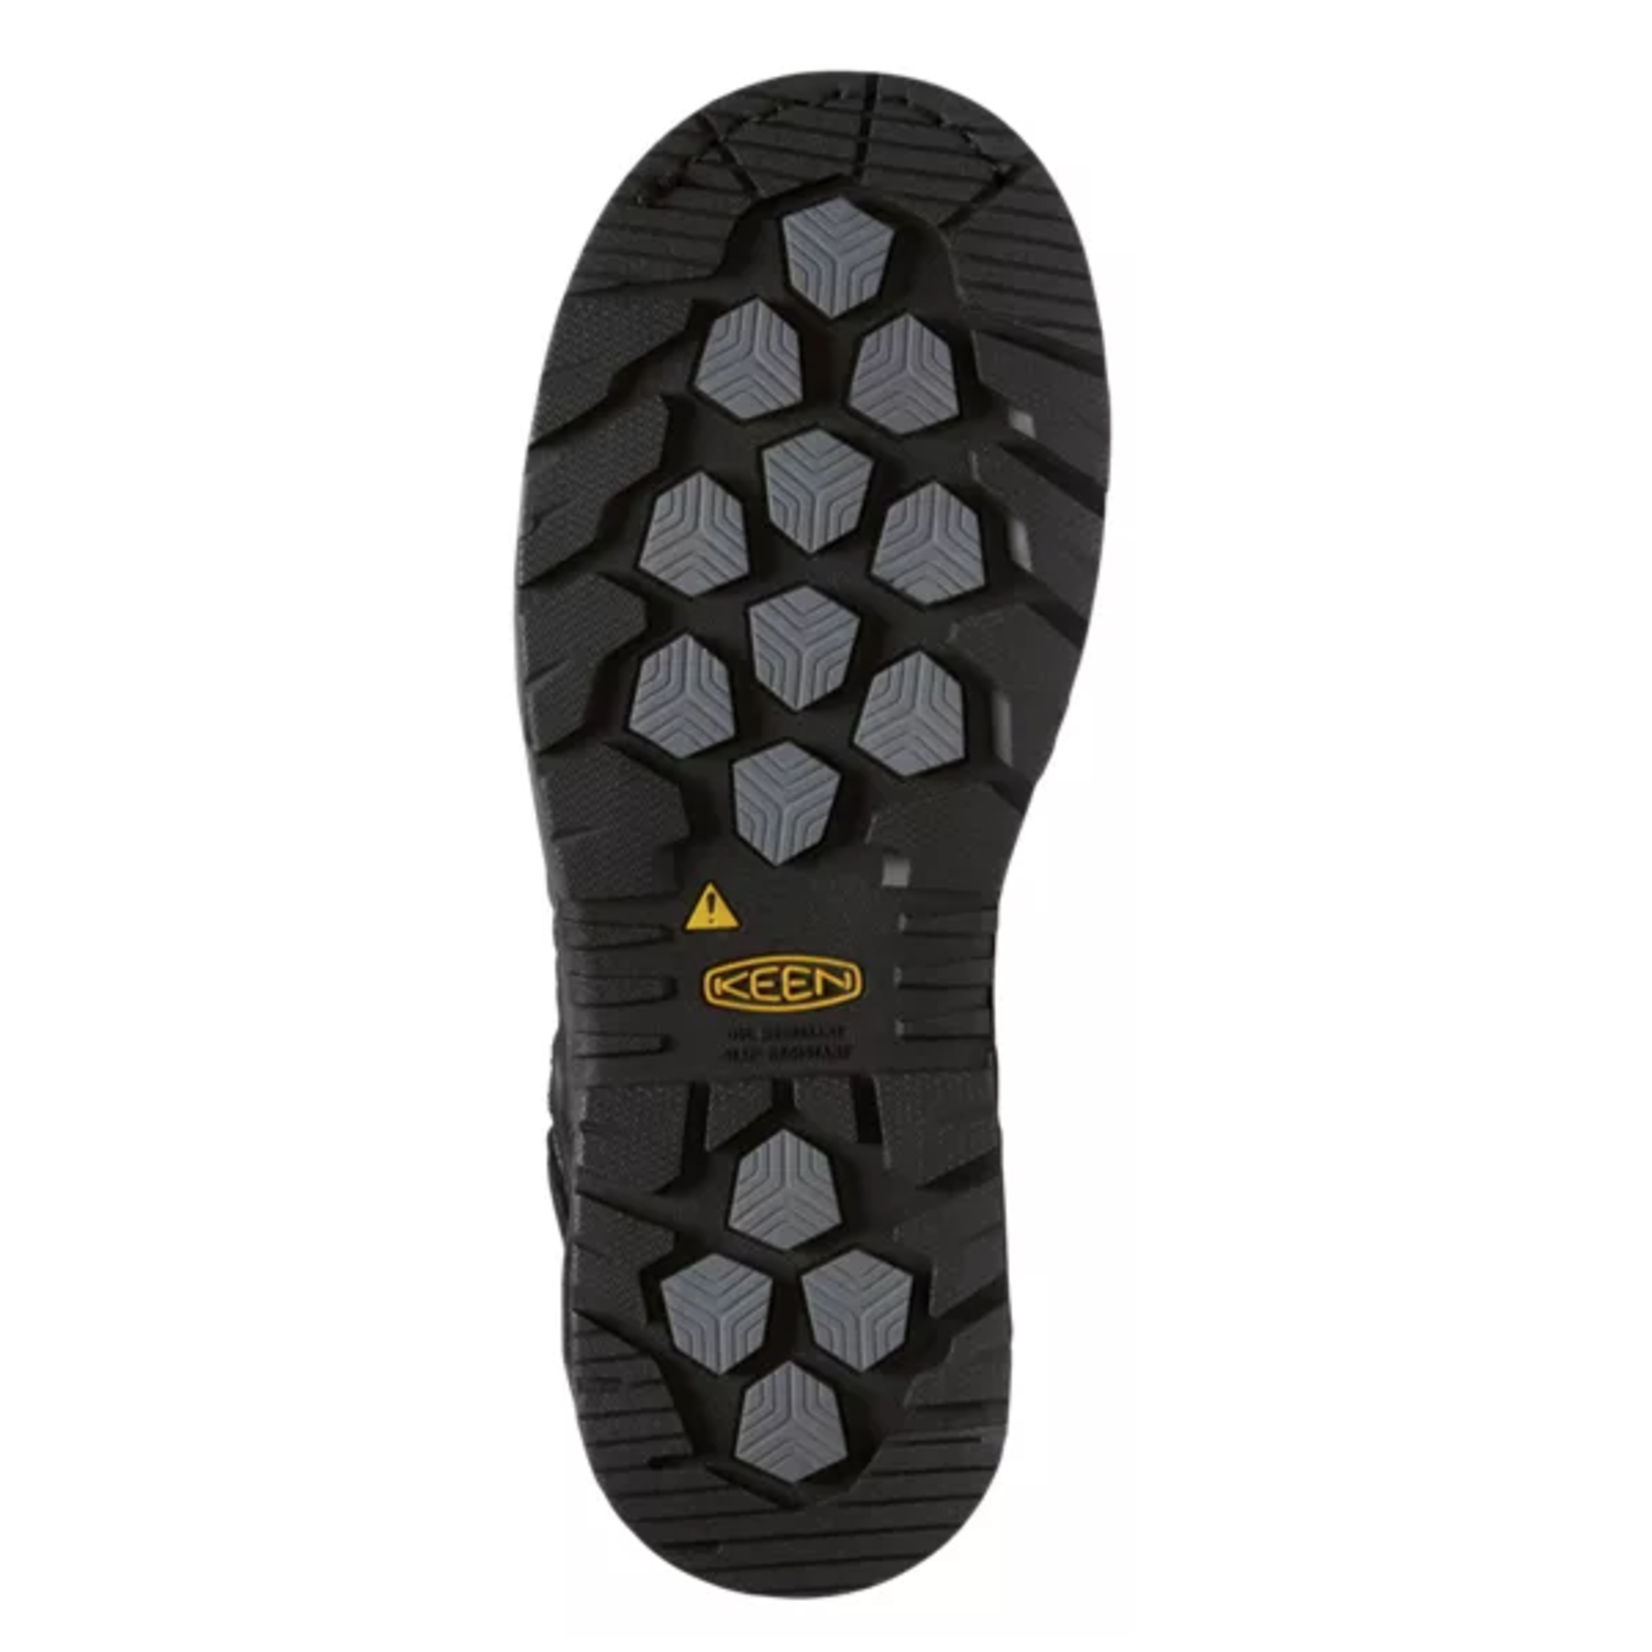 Keen Men's Keen 6" Carbon Toe Waterproof Philadelphia Brown 1022110